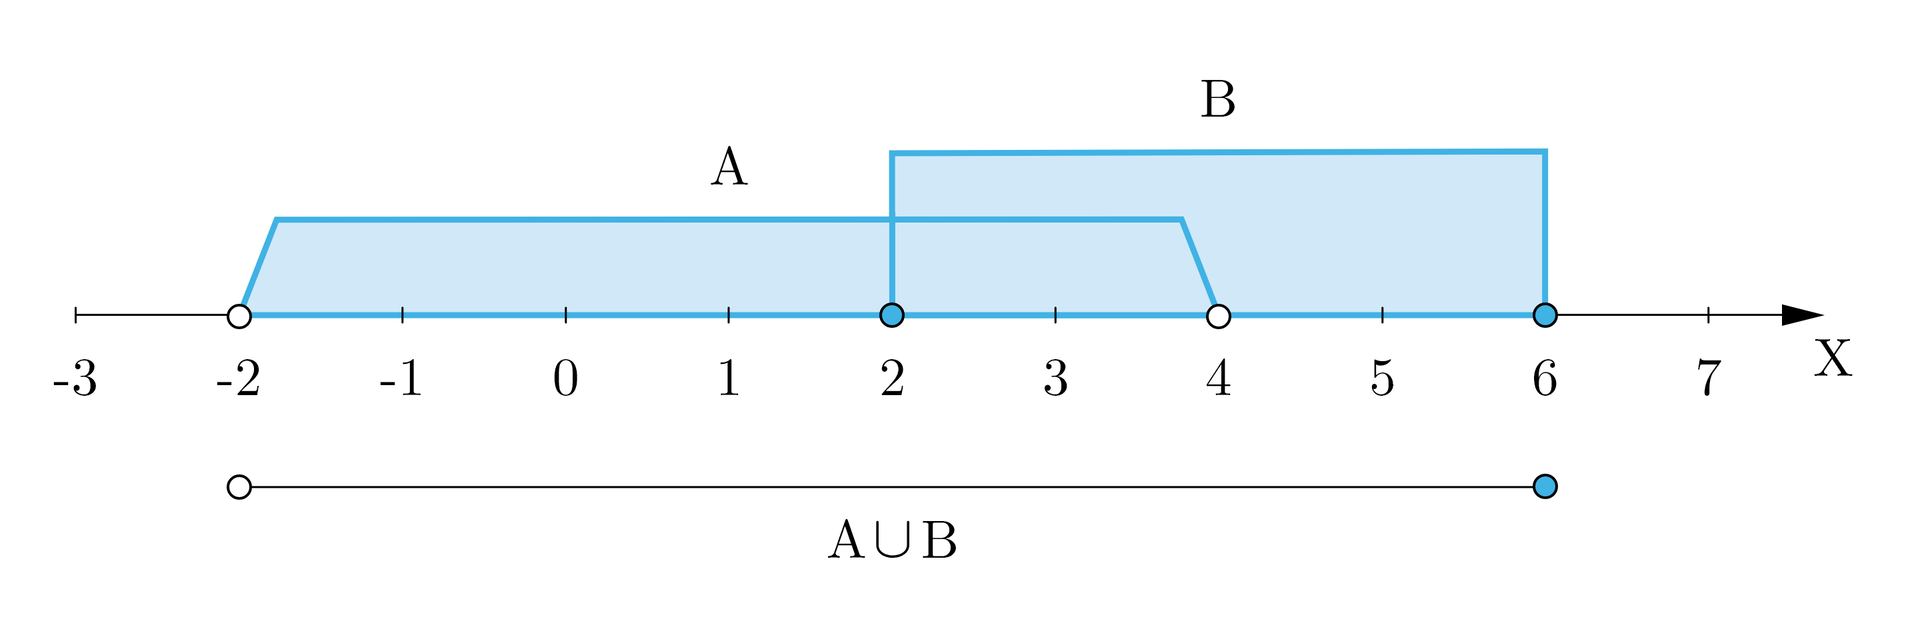 Ilustracja przedstawia oś iks z wartościami od minus trzy do siedem. Od minus dwa do cztery oznaczono zbiór a, od dwa do sześć oznaczono zbiór be. Od minus dwa do sześć oznaczono odcinek opisany jako suma zbiorów a i be.